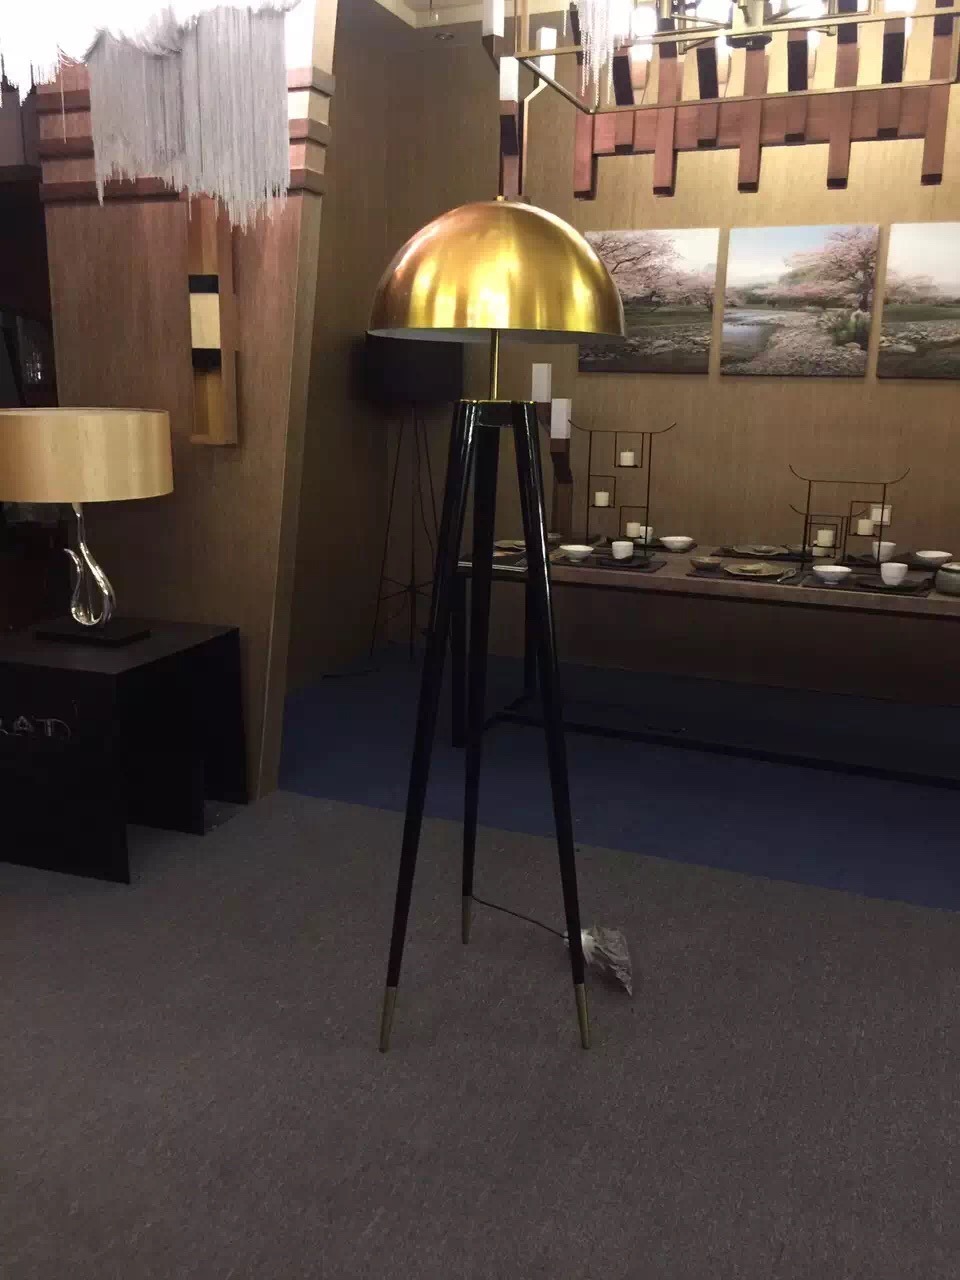 مصباح أرضي معدني ذهبي بتصميم حديث (KAF6102)